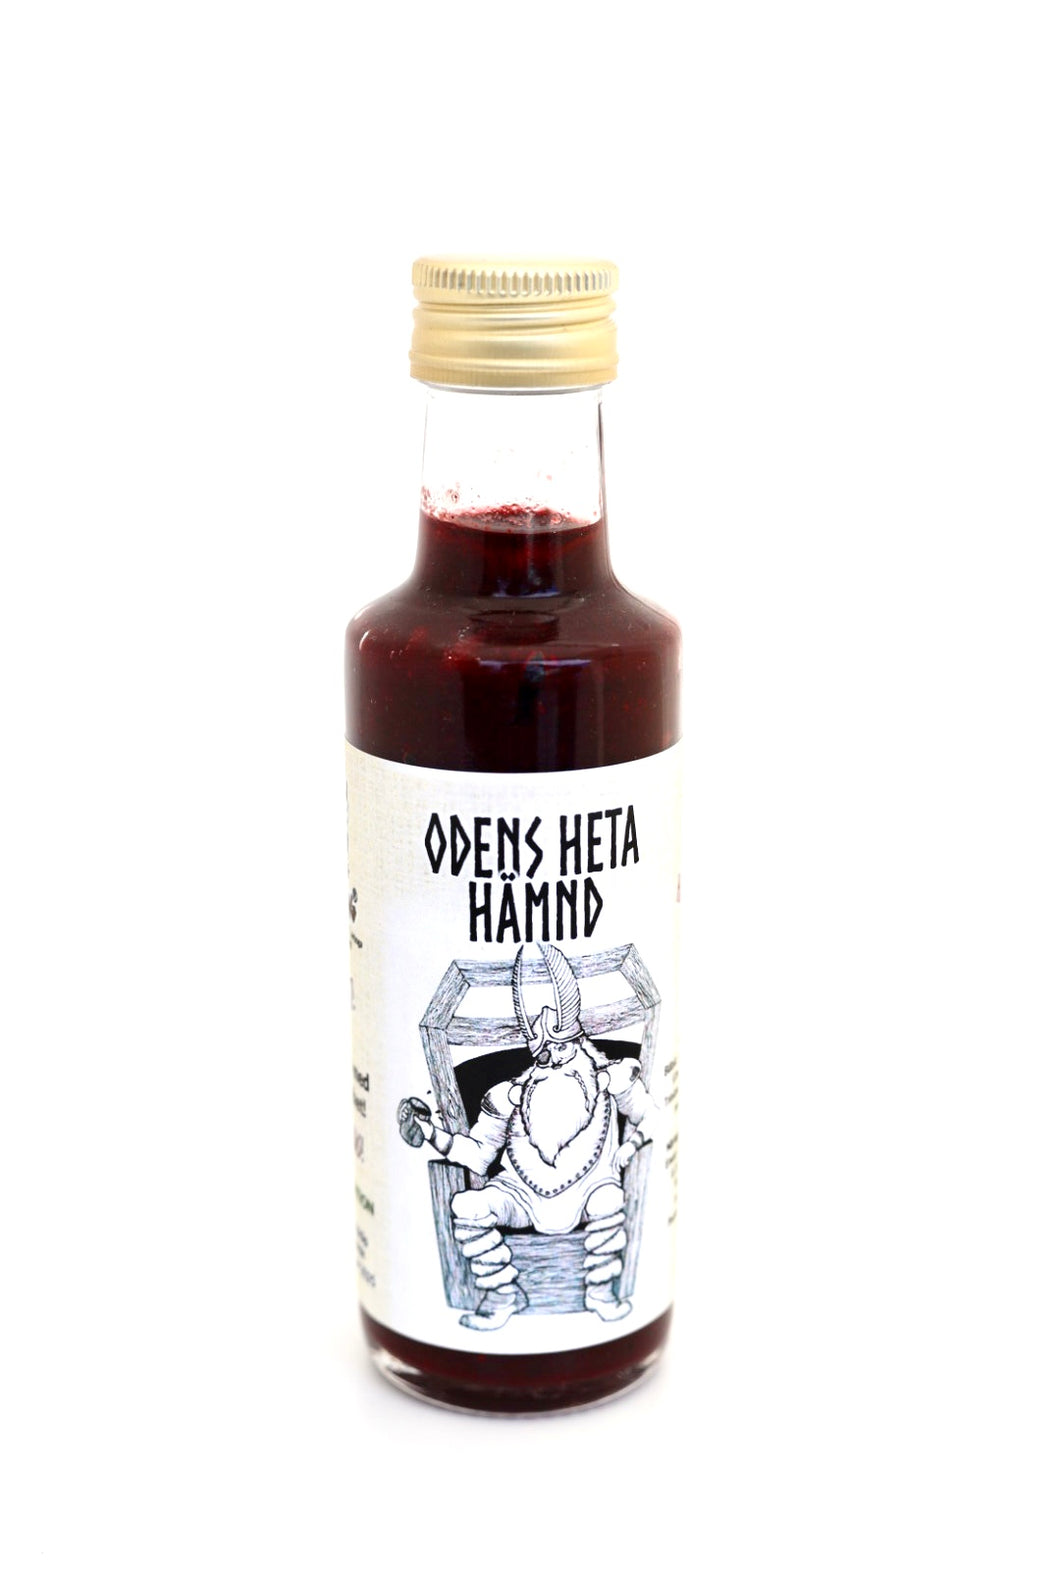 Odens Heta Vämnd - a very hot blueberry sauce